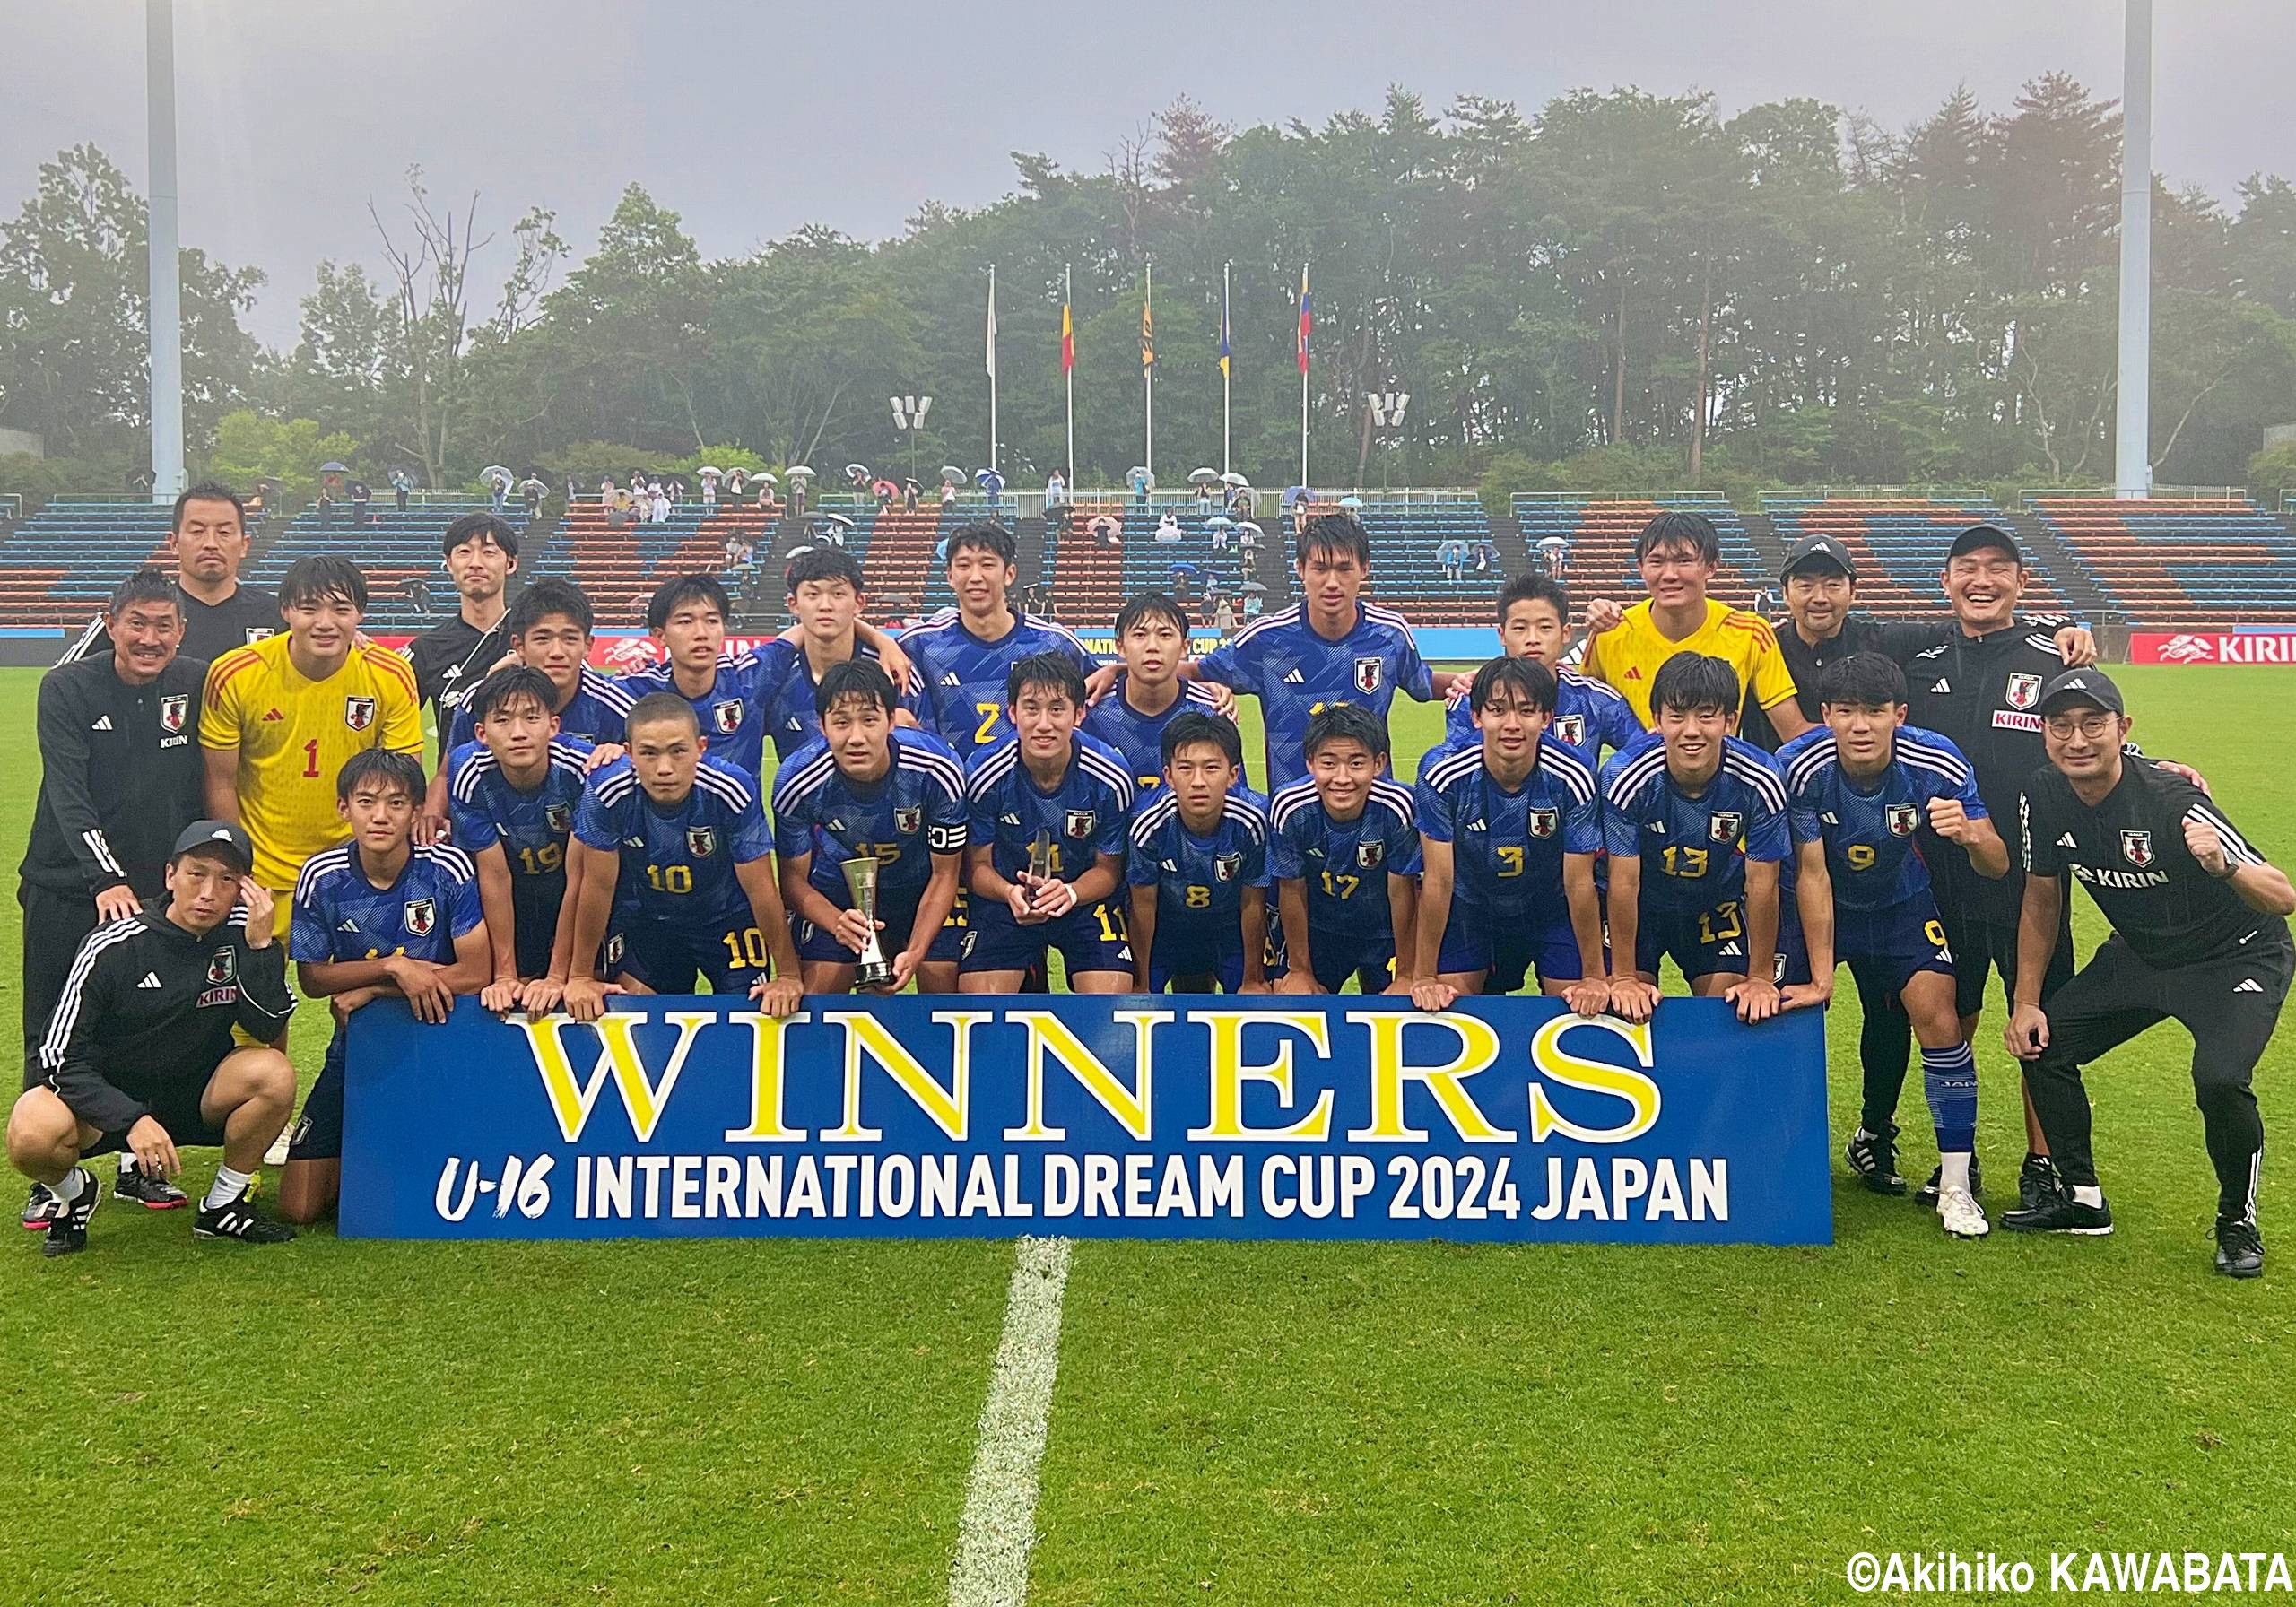 セネガルに3発逆転勝ち。U-16日本代表が3戦全勝でU-16インターナショナルドリームカップ4連覇(8枚)